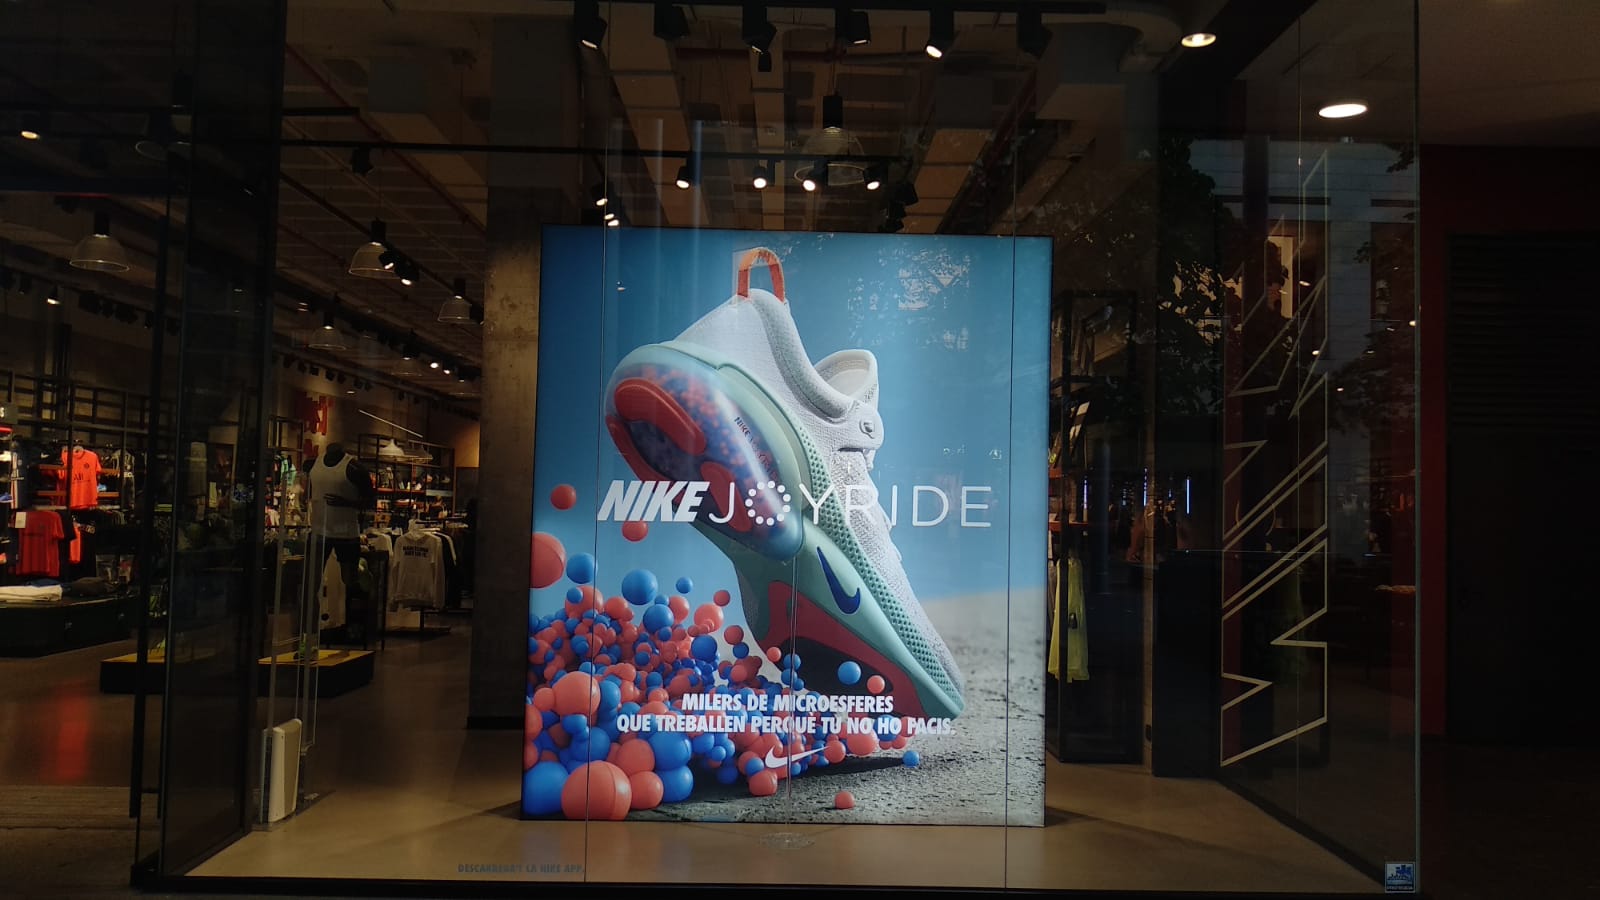 Nike Store Barcelona La Maquinista - Deportes Y Ocio: Artículos Ropas (Al Por Y en Barcelona (dirección, horarios, opiniones, TEL: 932208...) - Infobel